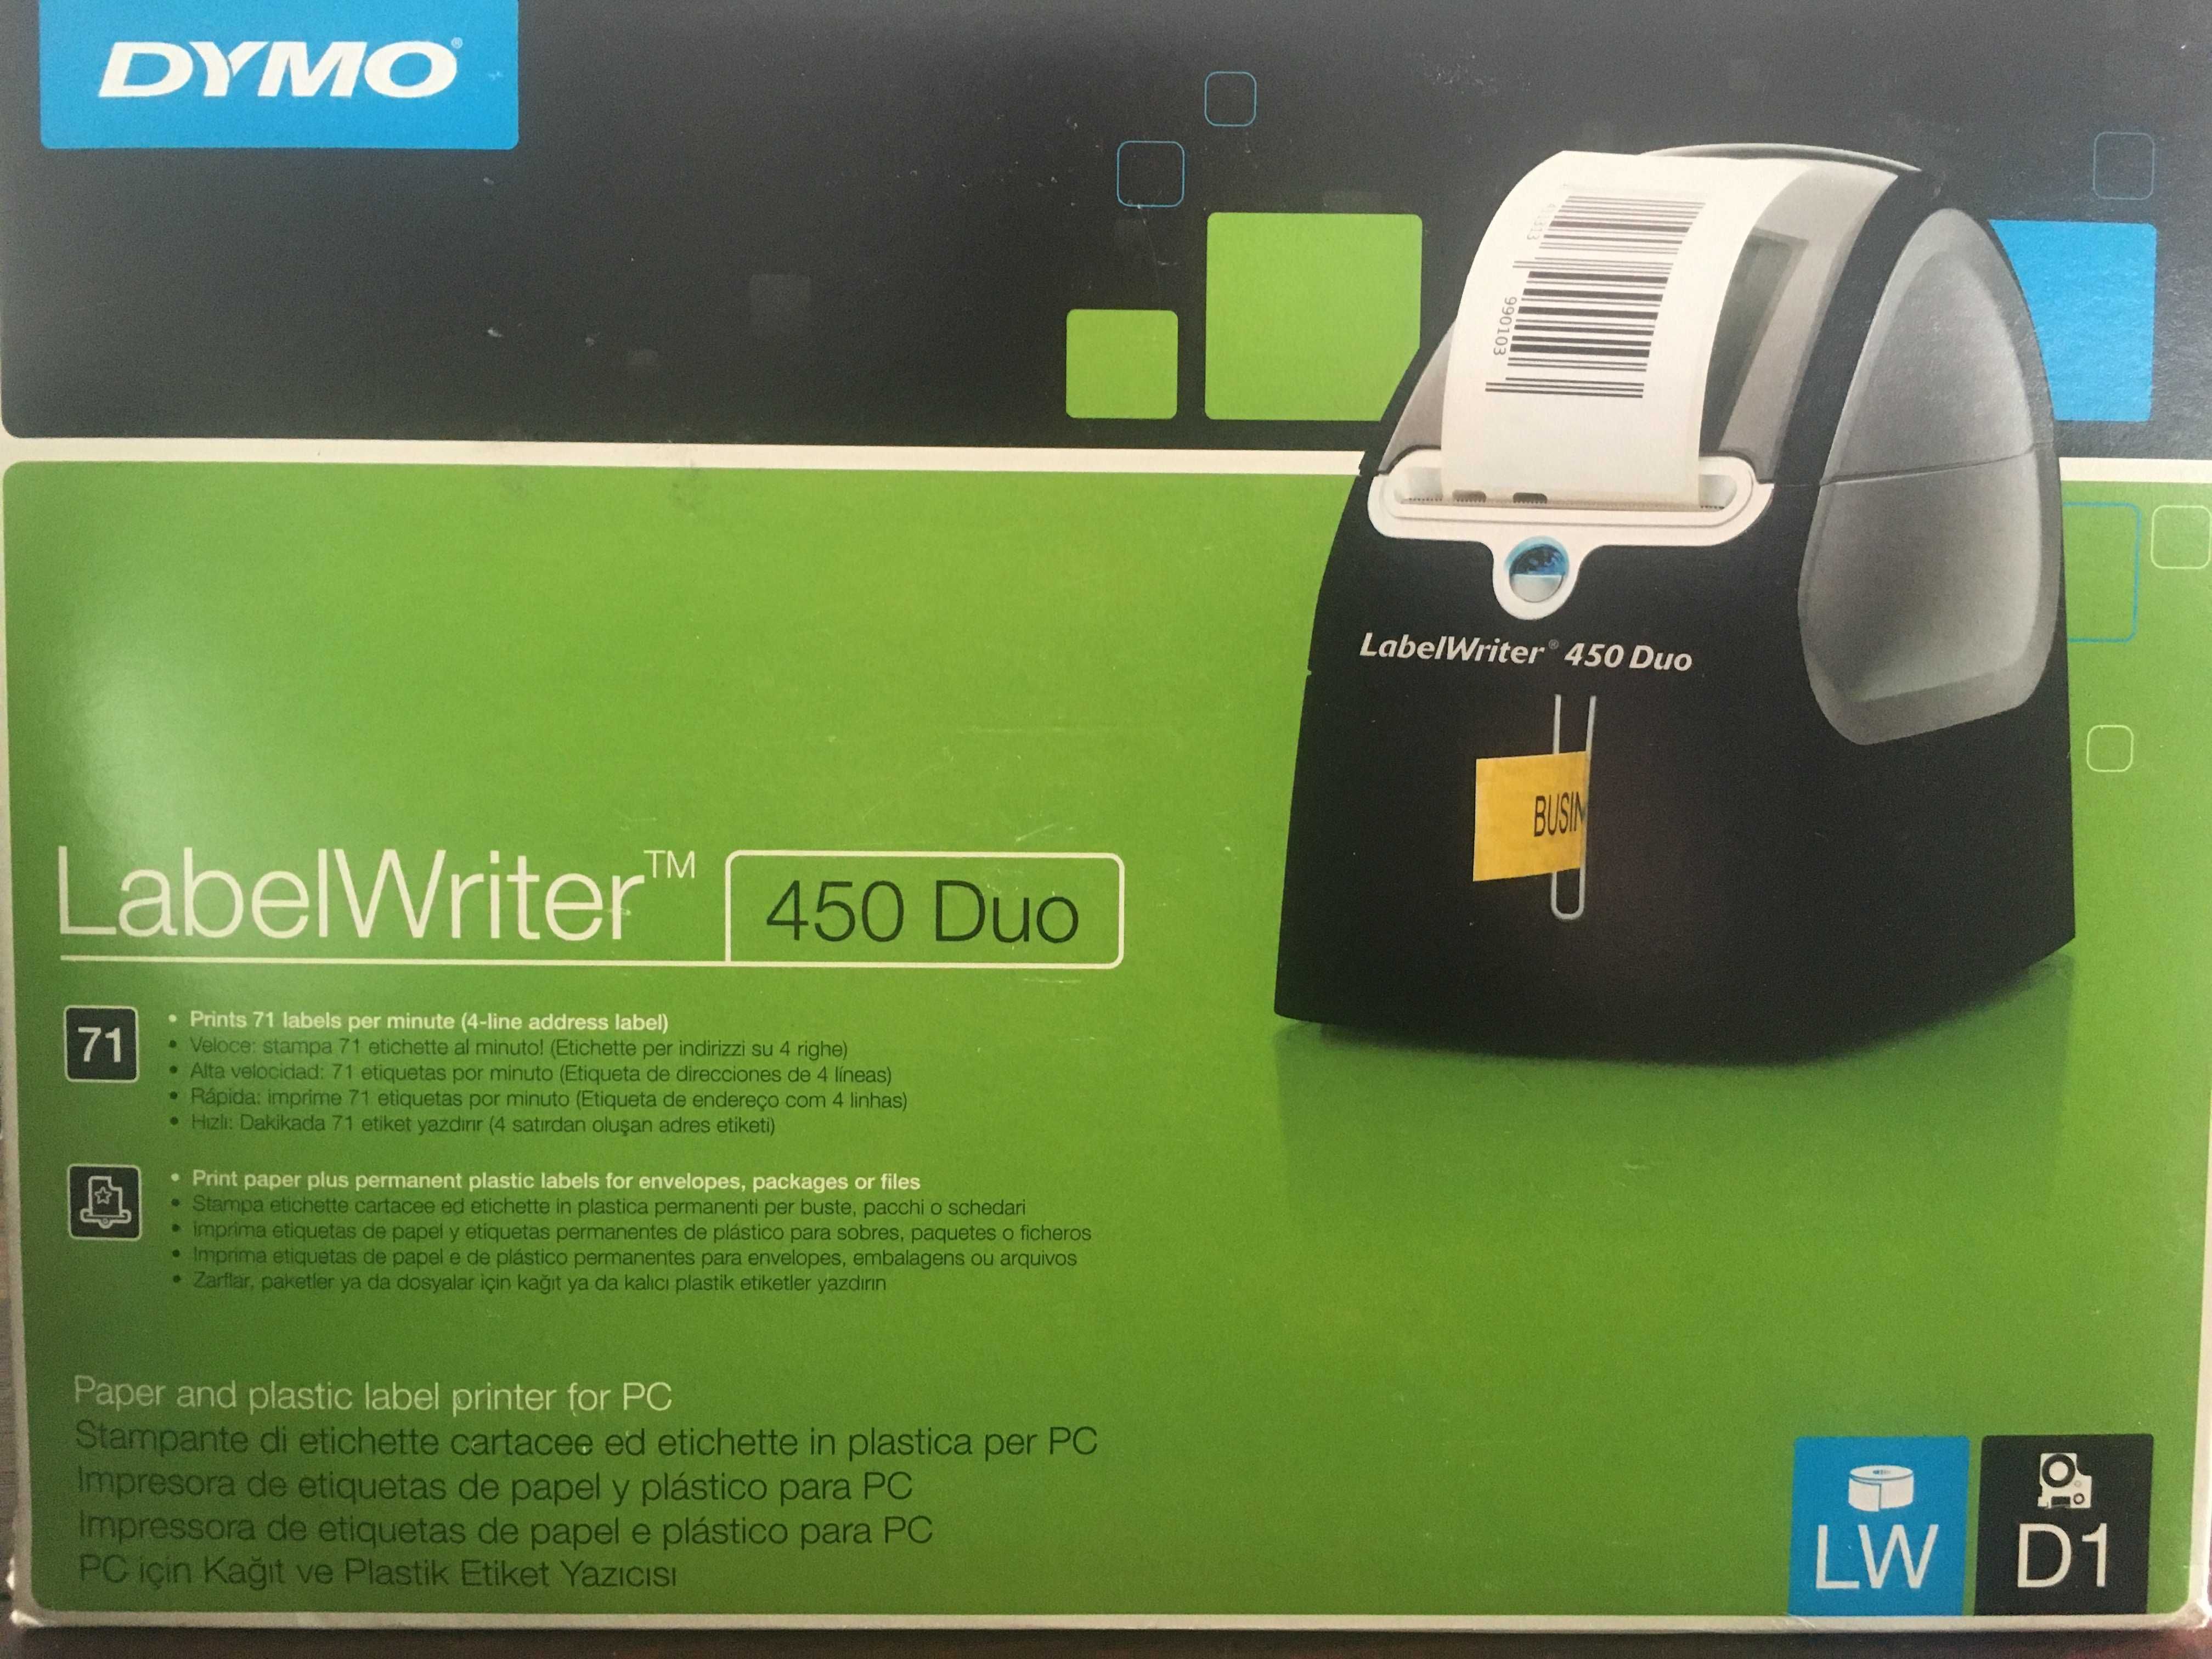 Impressora Dymo Label Writer 450 Duo